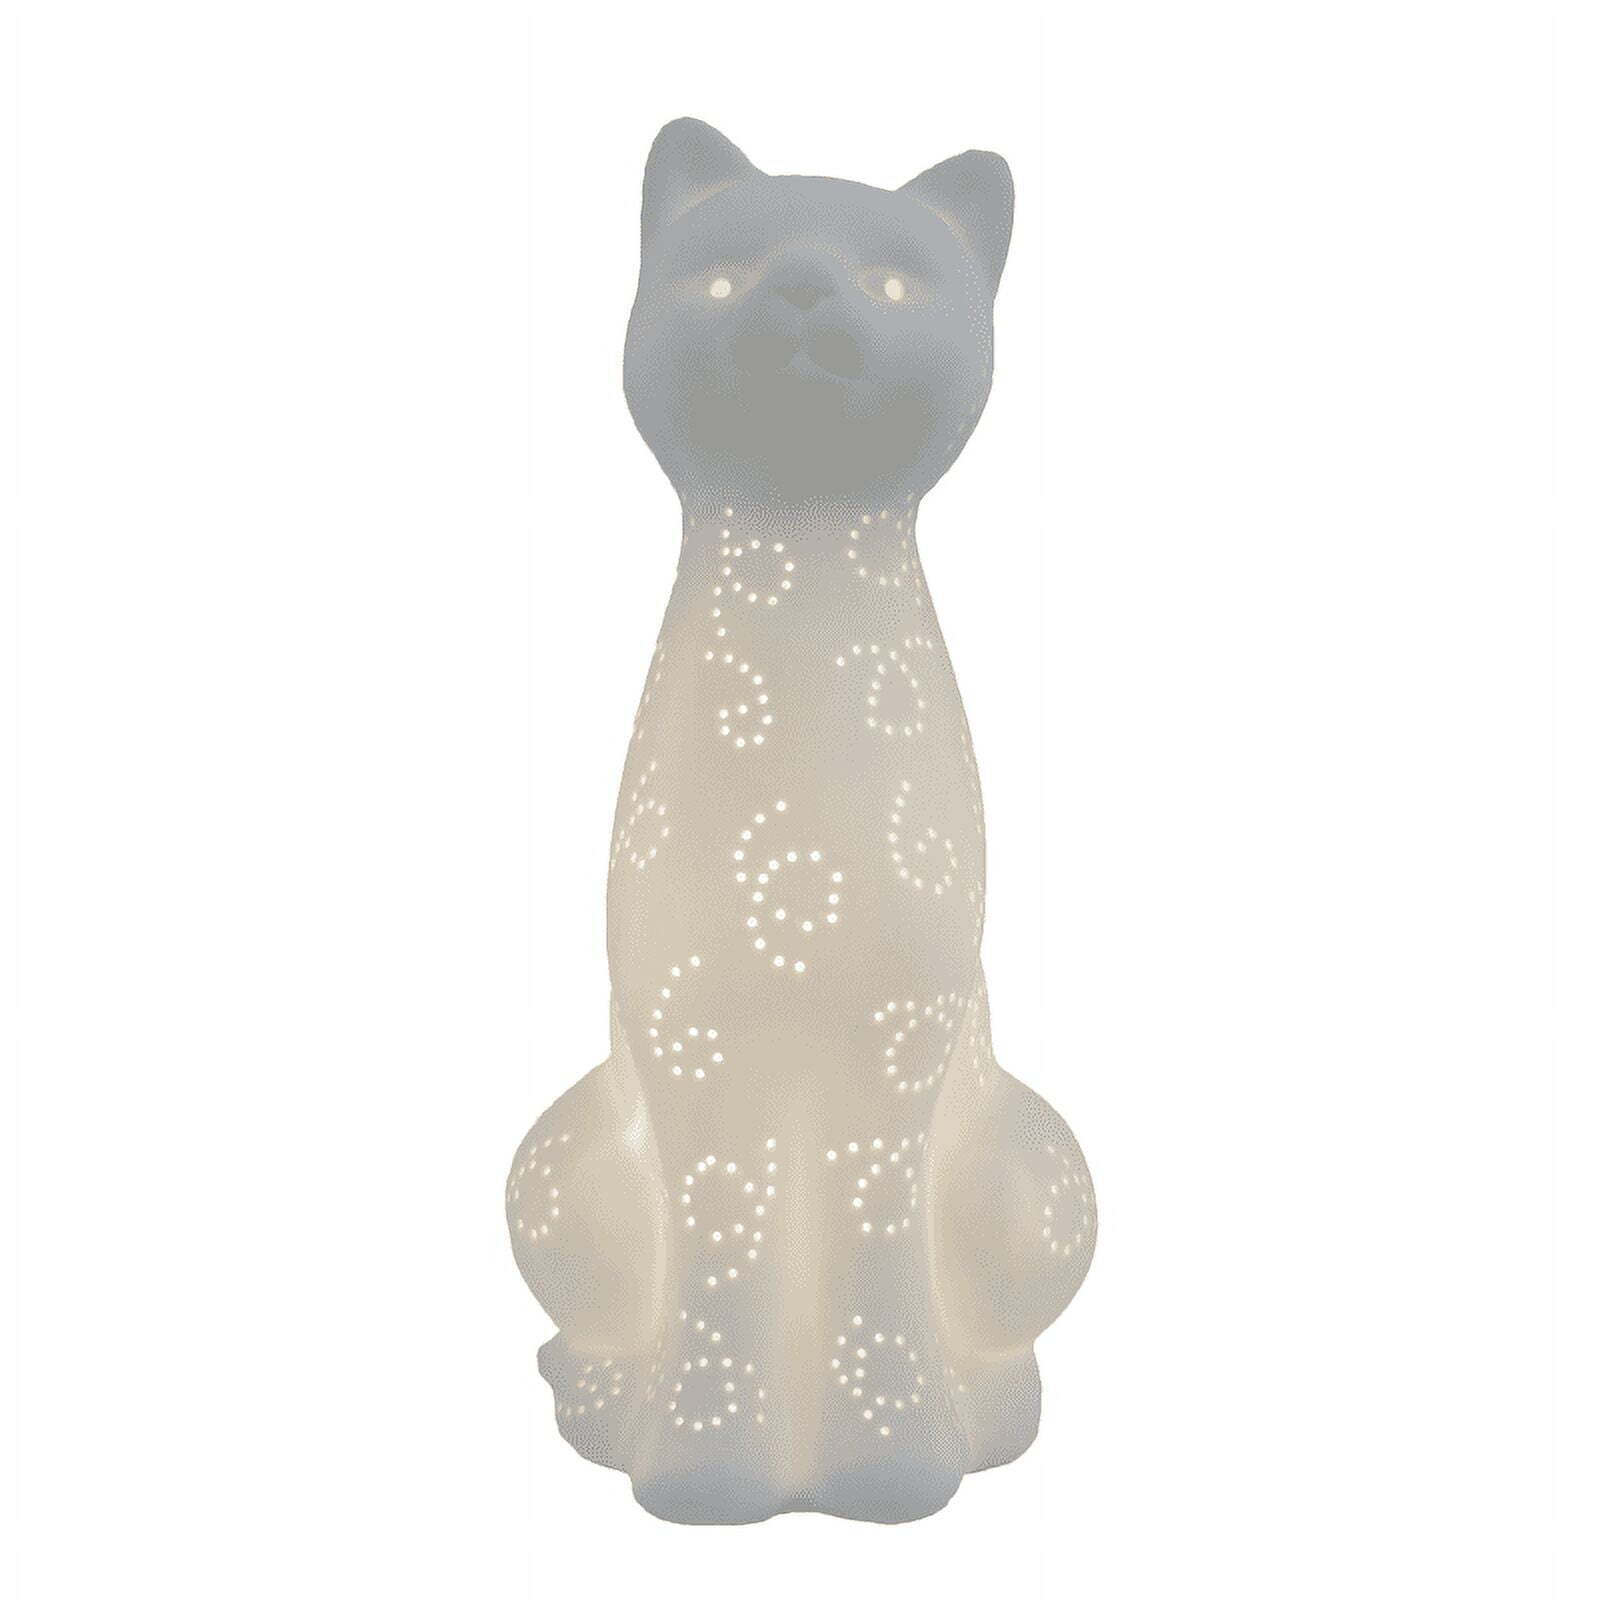 Porcelain Kitty Cat Shaped Animal Light Table Lamp